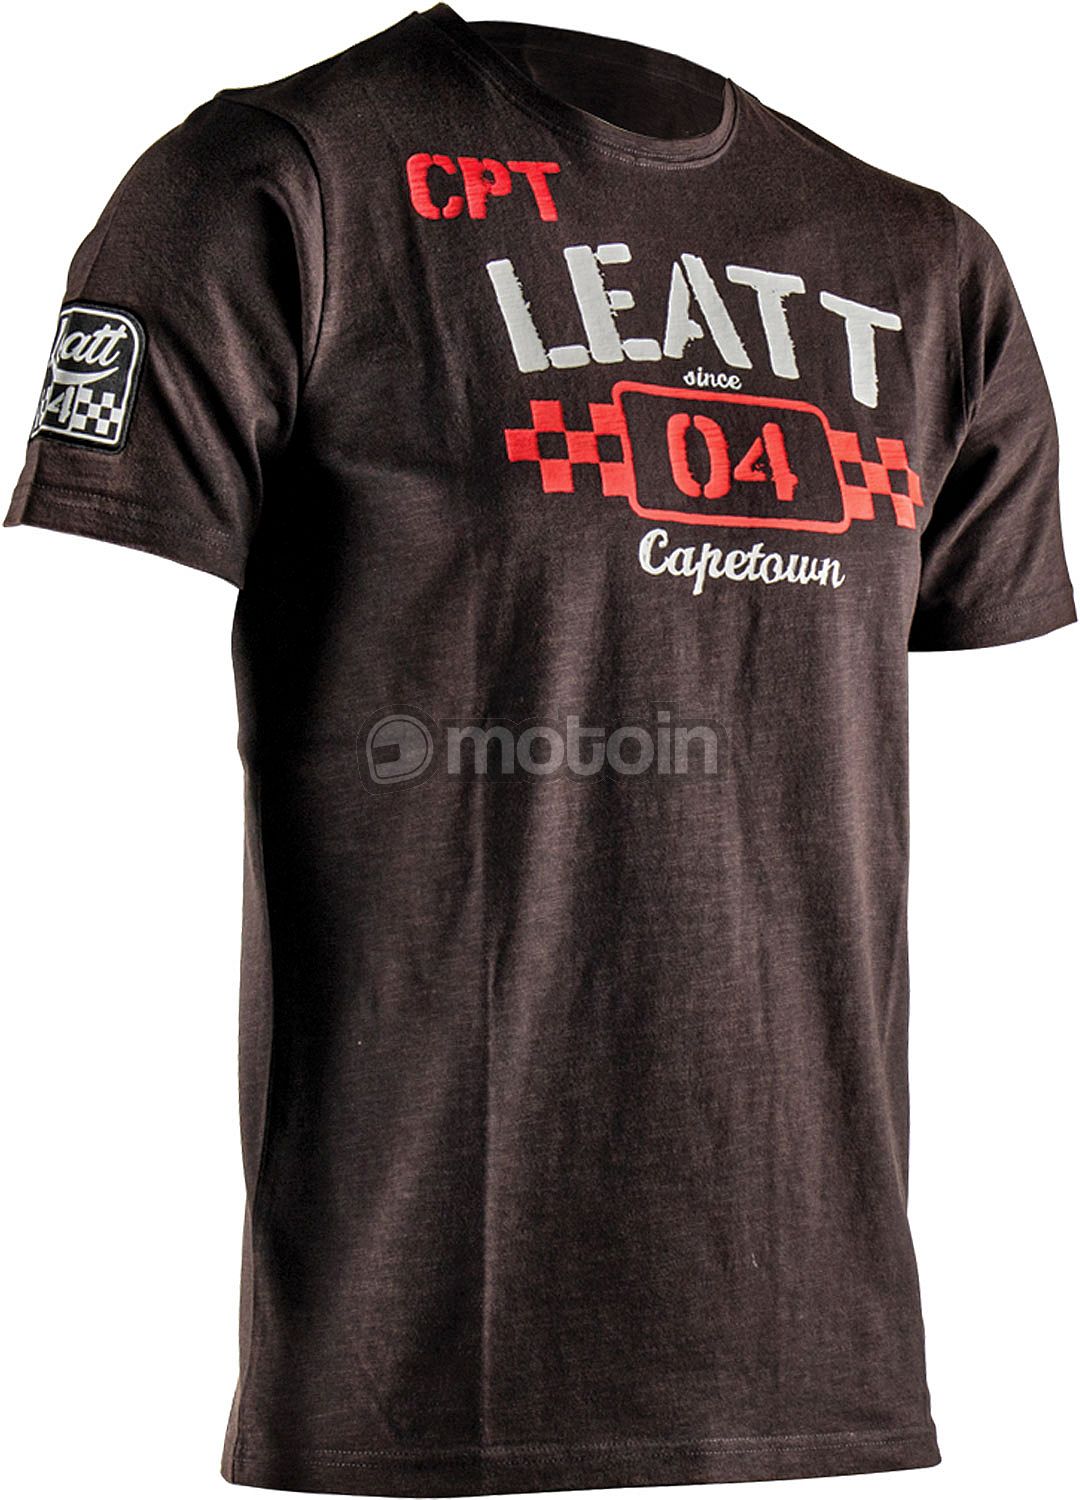 Leatt Heritage S22, camiseta